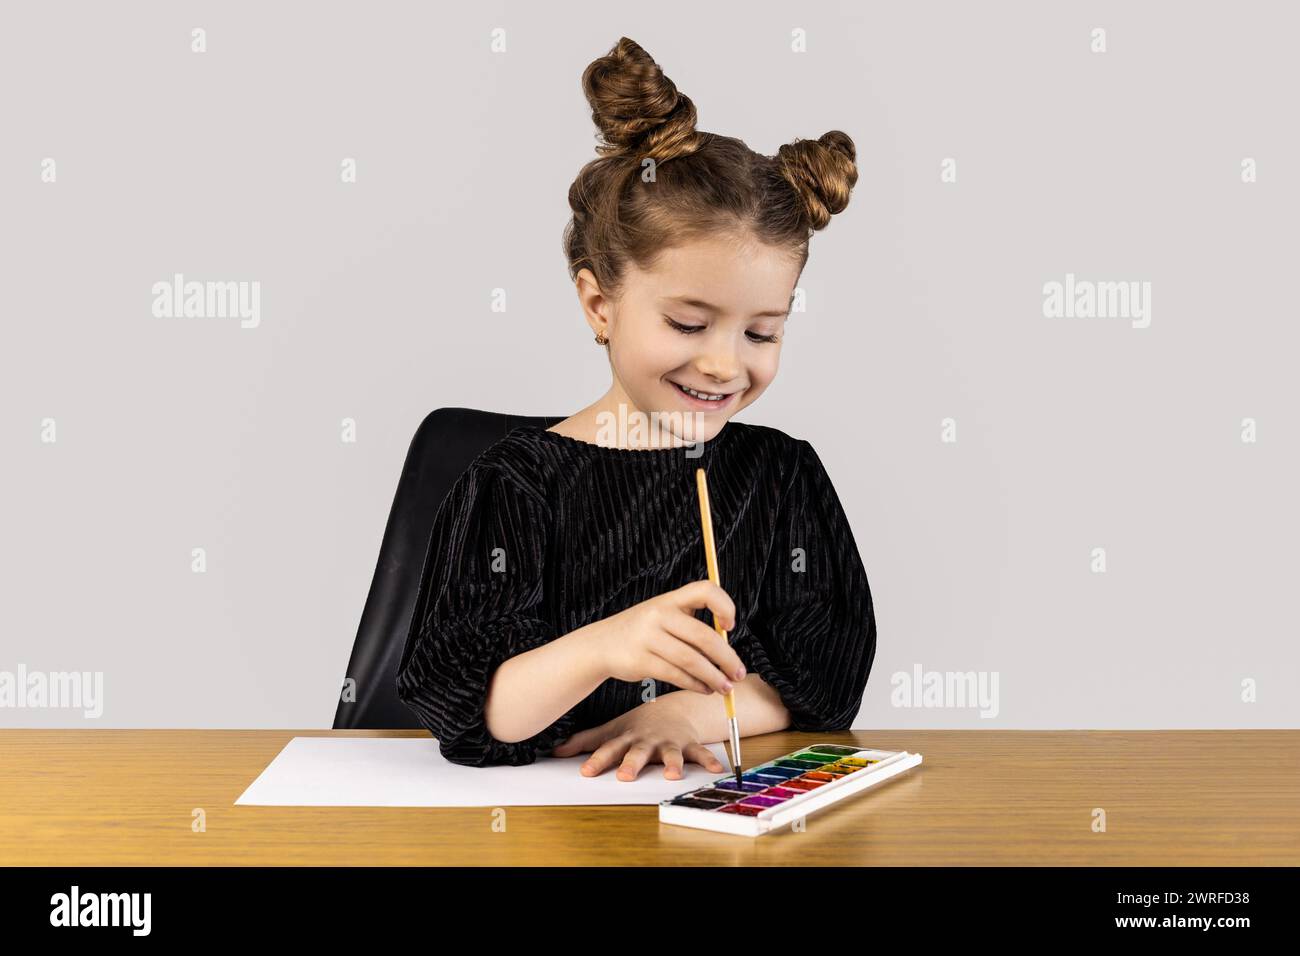 Ein kleines Mädchen sitzt an einem Tisch und lächelt, während sie mit Aquarellen malt. Sie ist umgeben von Kunstgegenständen und Schmuck und schafft ein wunderschönes Meisterwerk Stockfoto